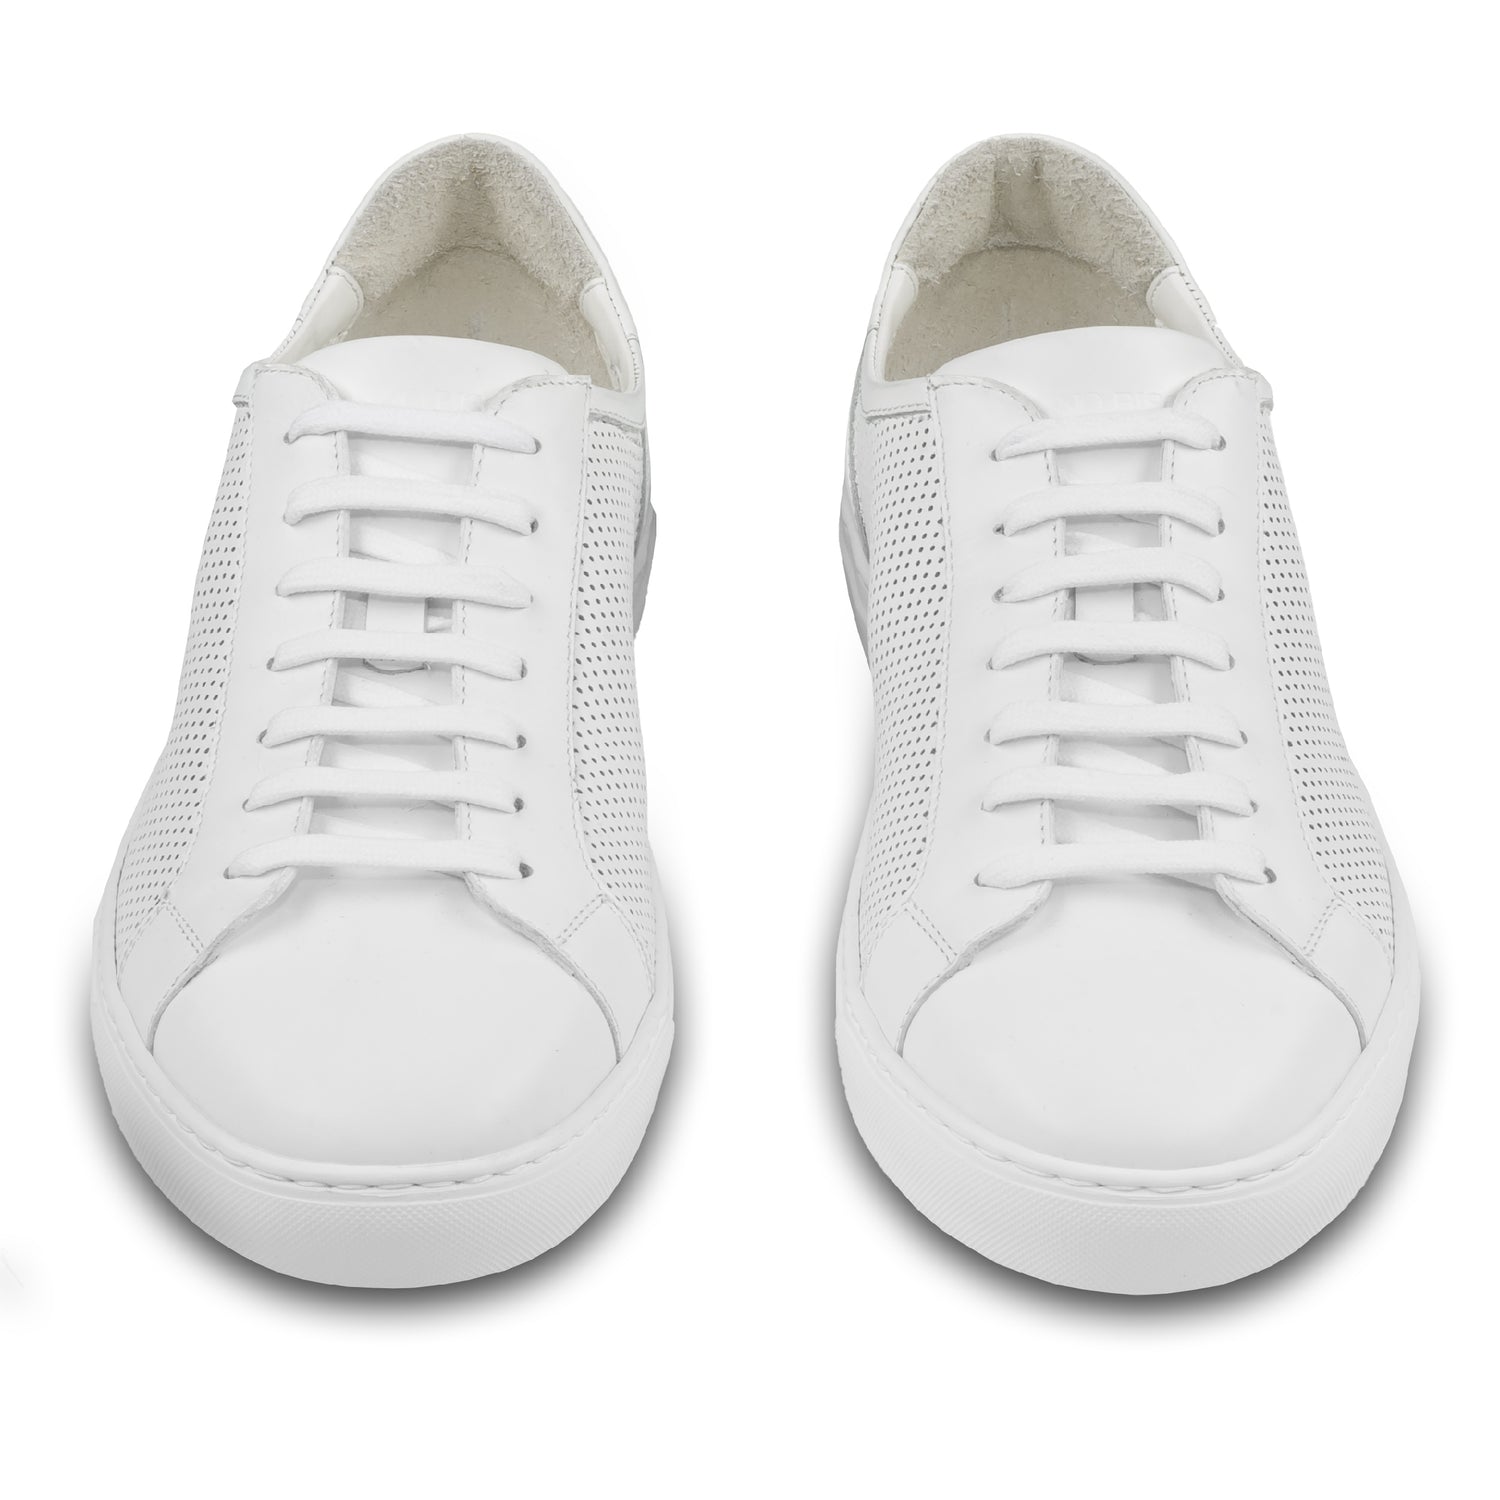 Rossano Bisconti – Italienische Herren Sneaker in weiß aus. Aus Kalbsleder sommerlich perforiert, mit weißer Sohle. Handgefertigt. Paarweise Ansicht von vorne.